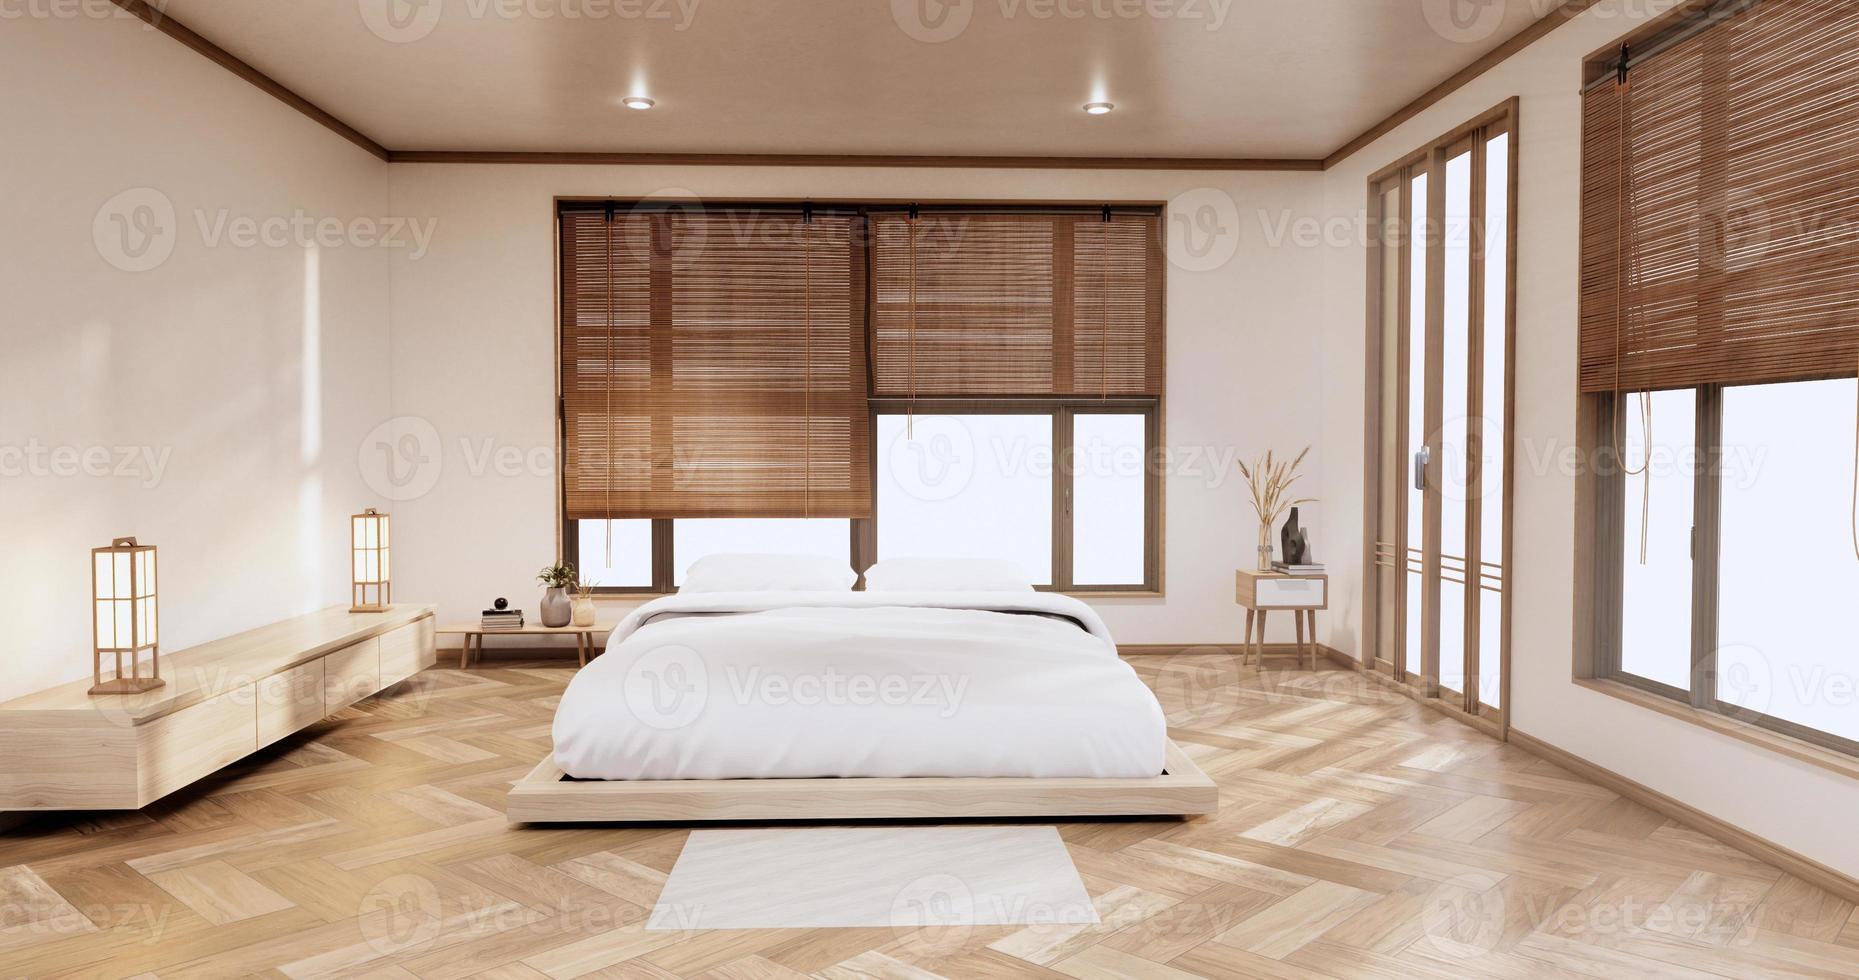 minimalistisch stijlvol interieur van moderne houten kamer met comfortabel bed.3D-rendering foto